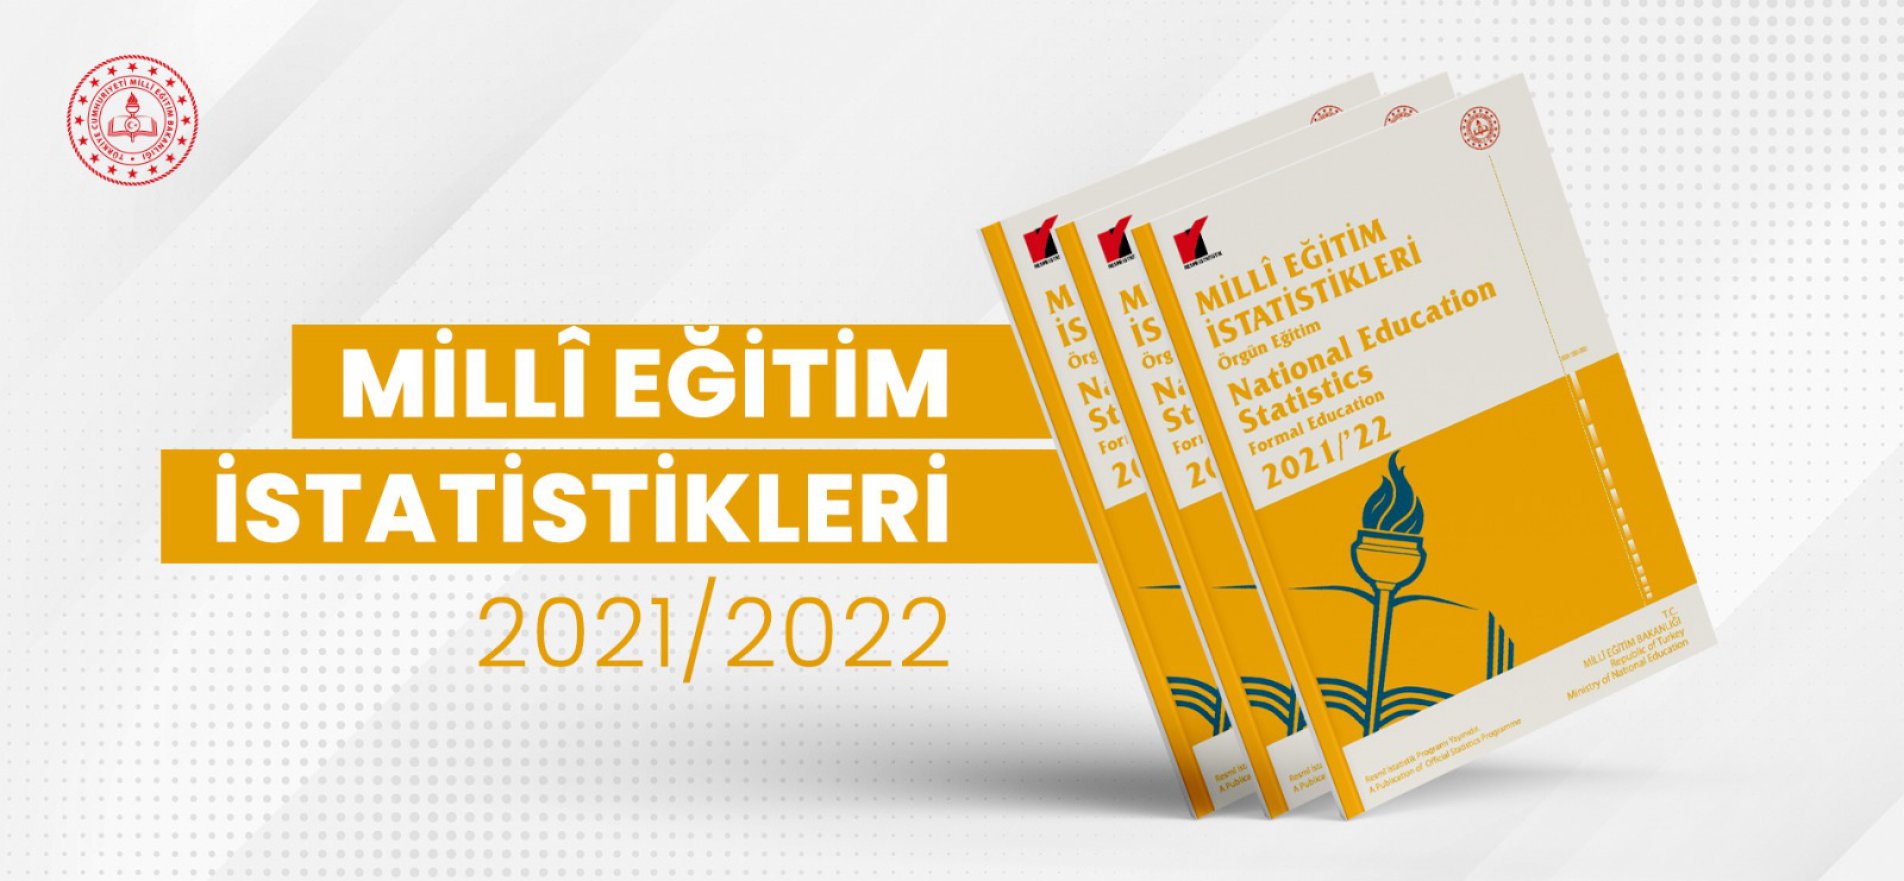 Örgün Eğitim 2021-2022" verileri açıklandı.